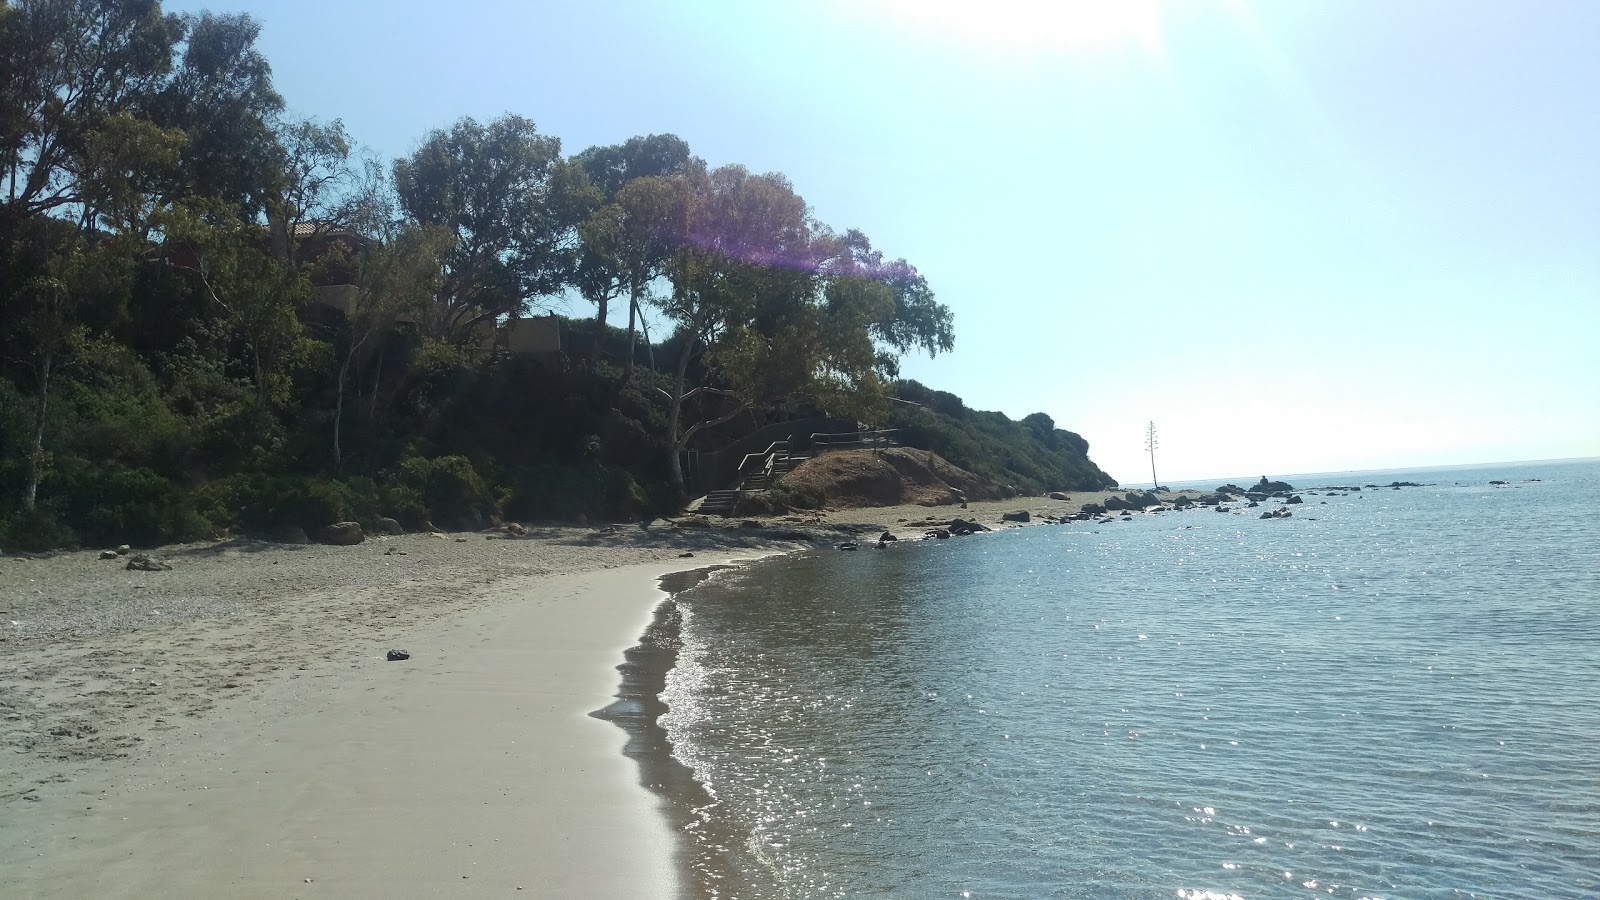 Fotografie cu Playa Limite Cadiz, Malaga cu o suprafață de nisip gri